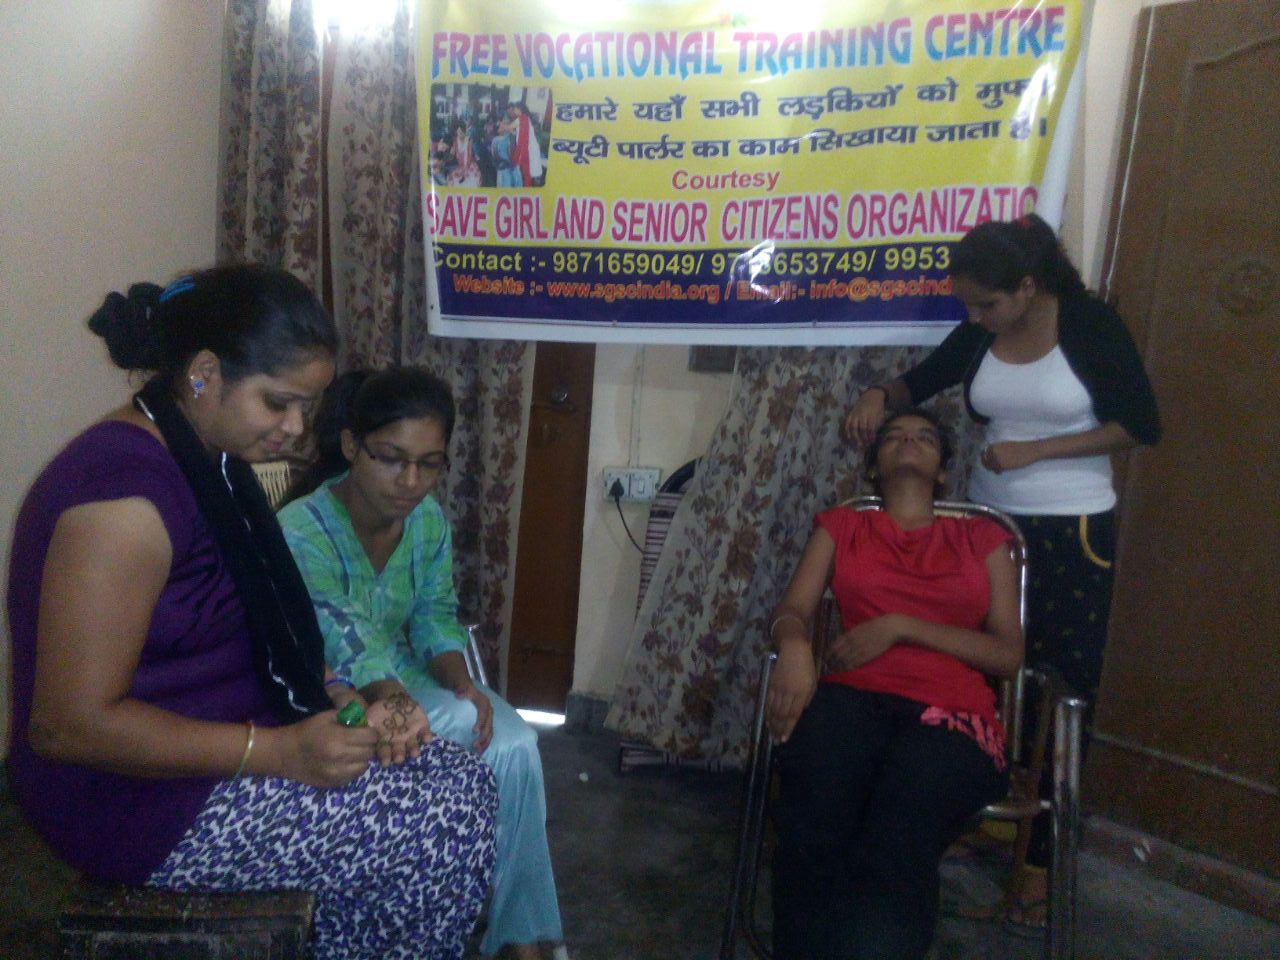 Free Vocational Training Centre